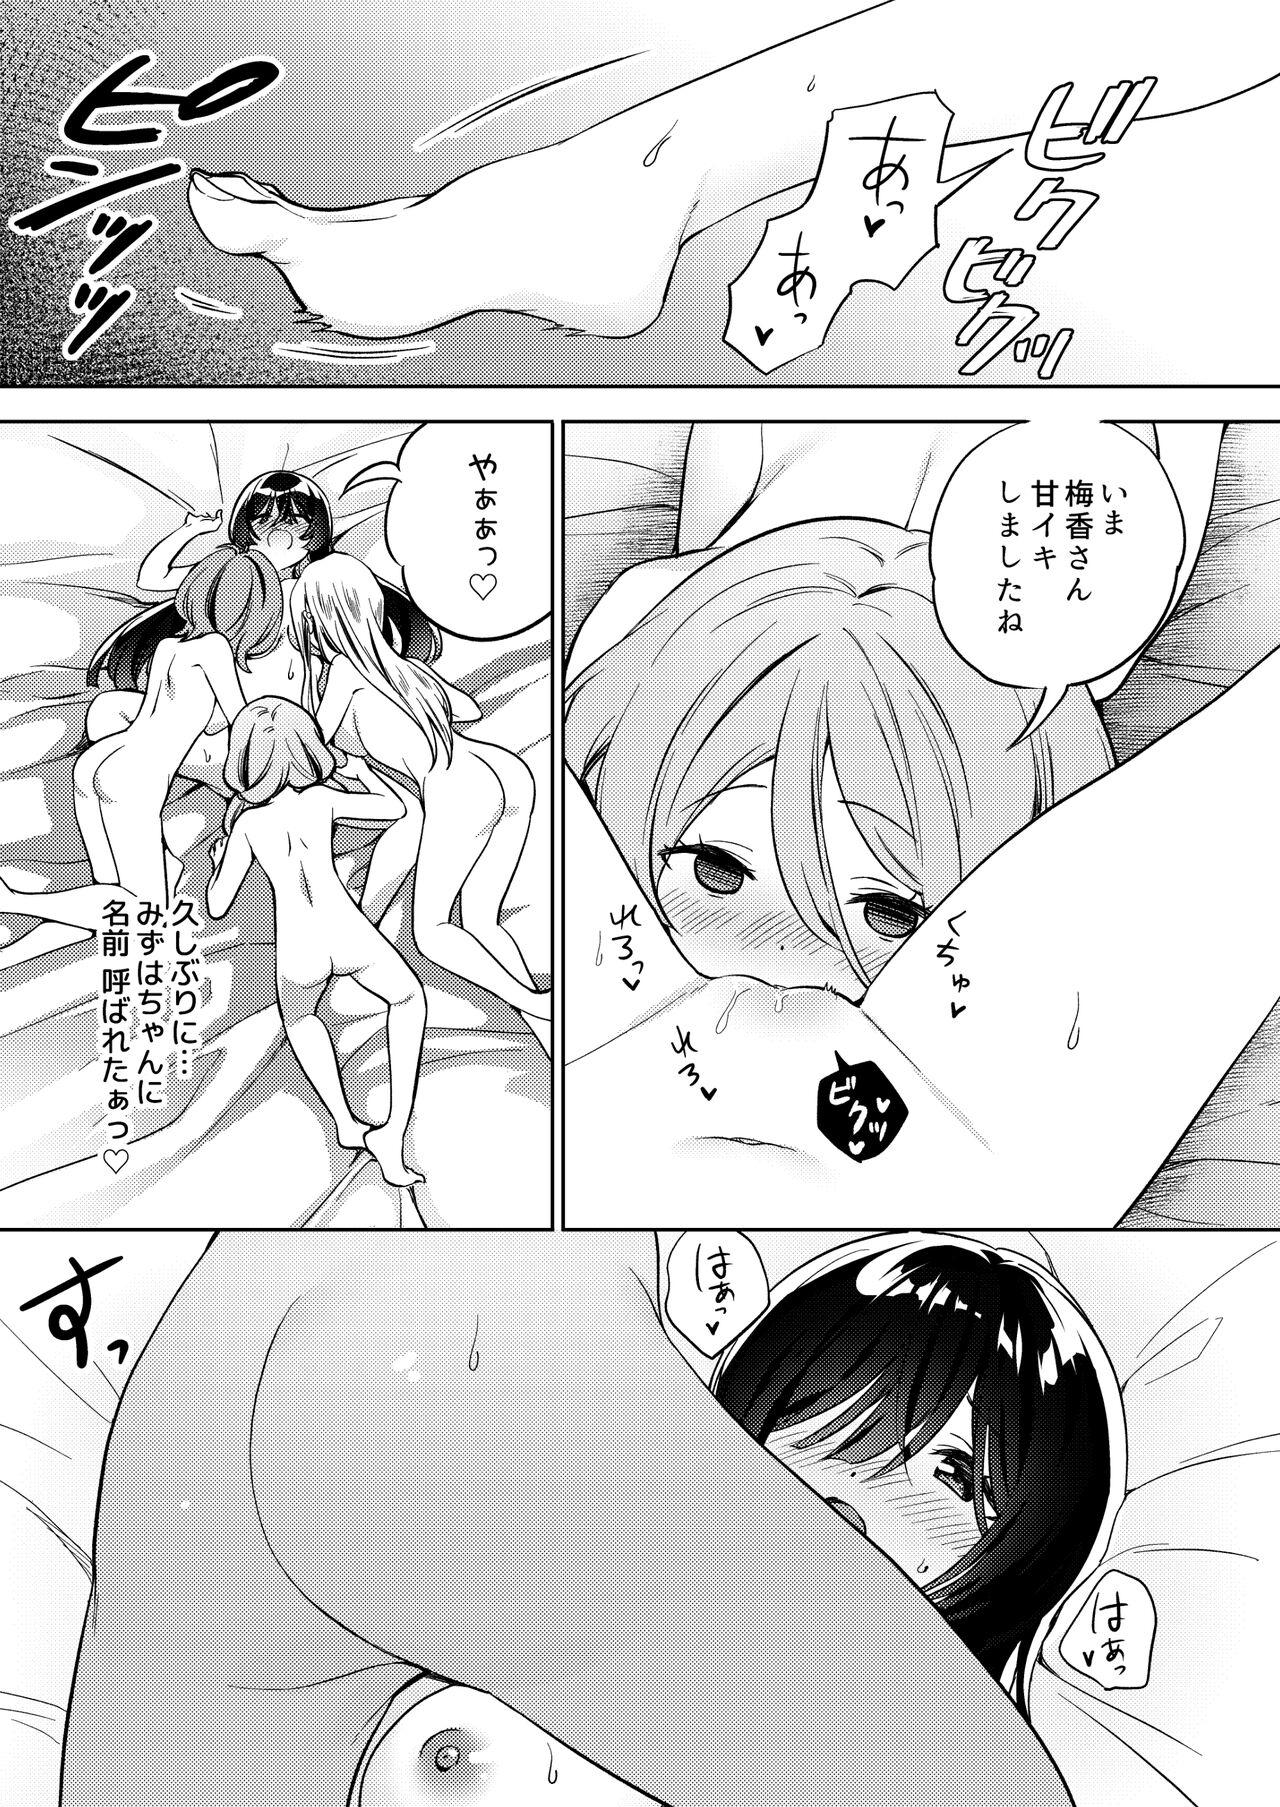 Enema Minna de Ecchi na Yurikatsu Appli ～Eeh!? Kono Naka ni Kakattenai Musume ga Iru!?～ - Original Red - Page 9